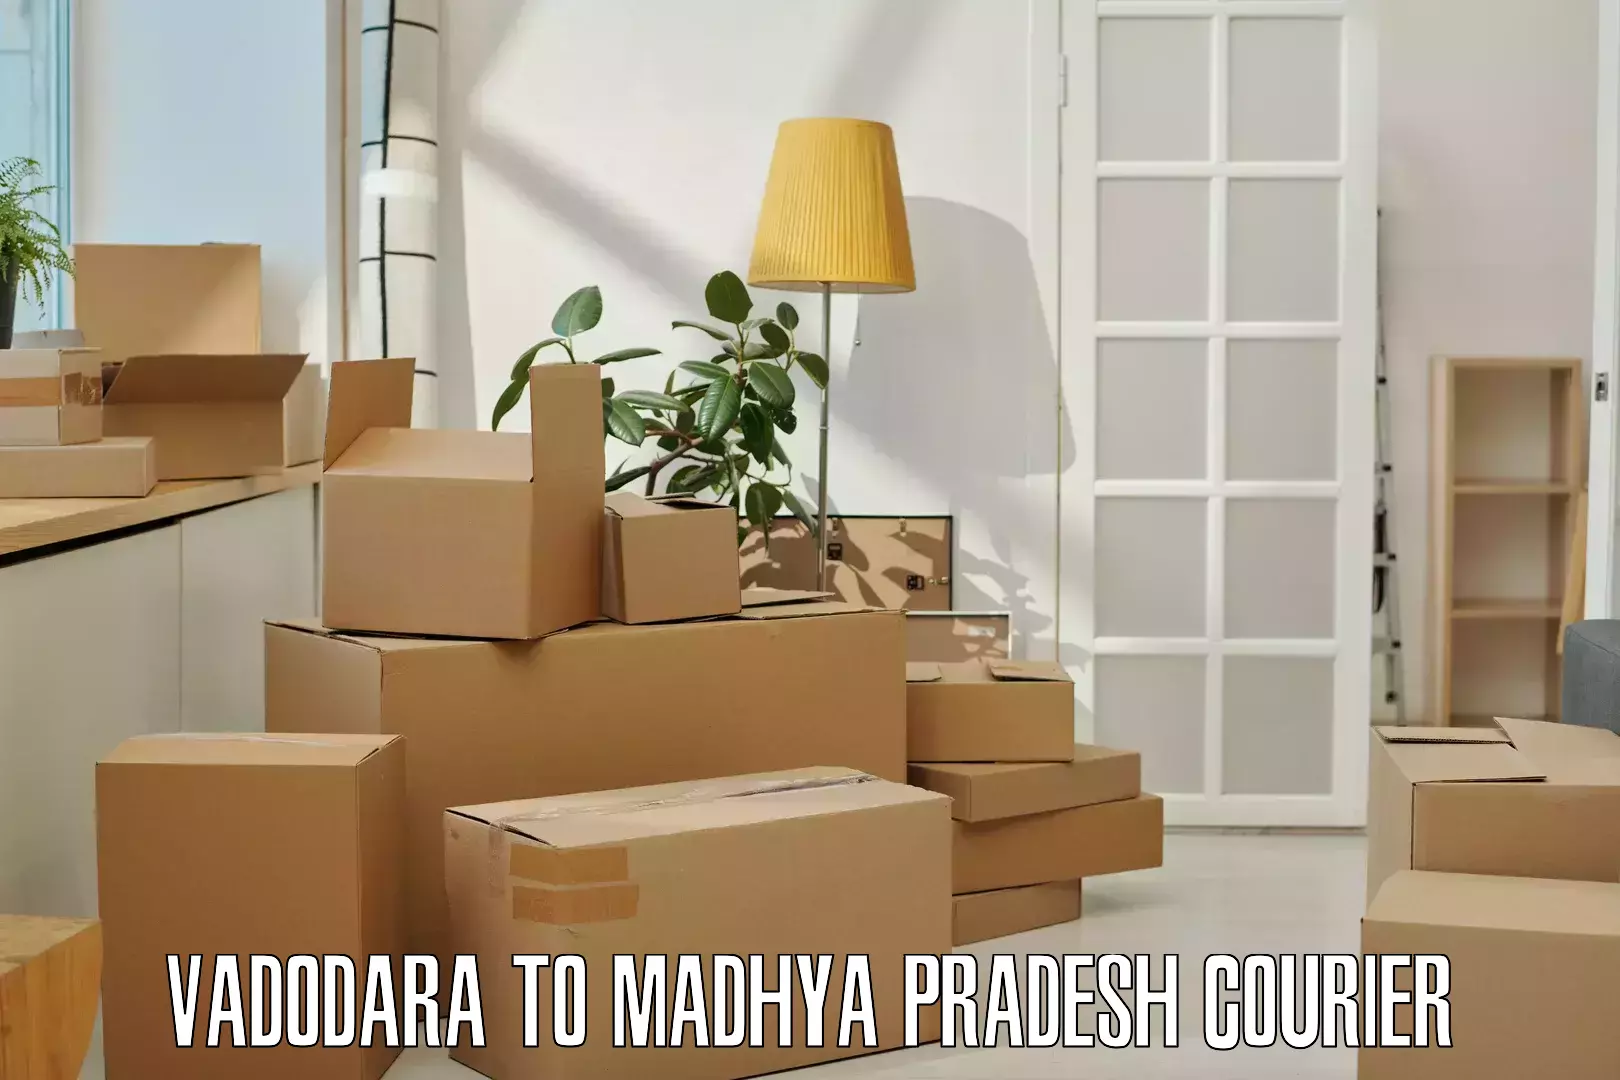 Next day courier Vadodara to Ashoknagar